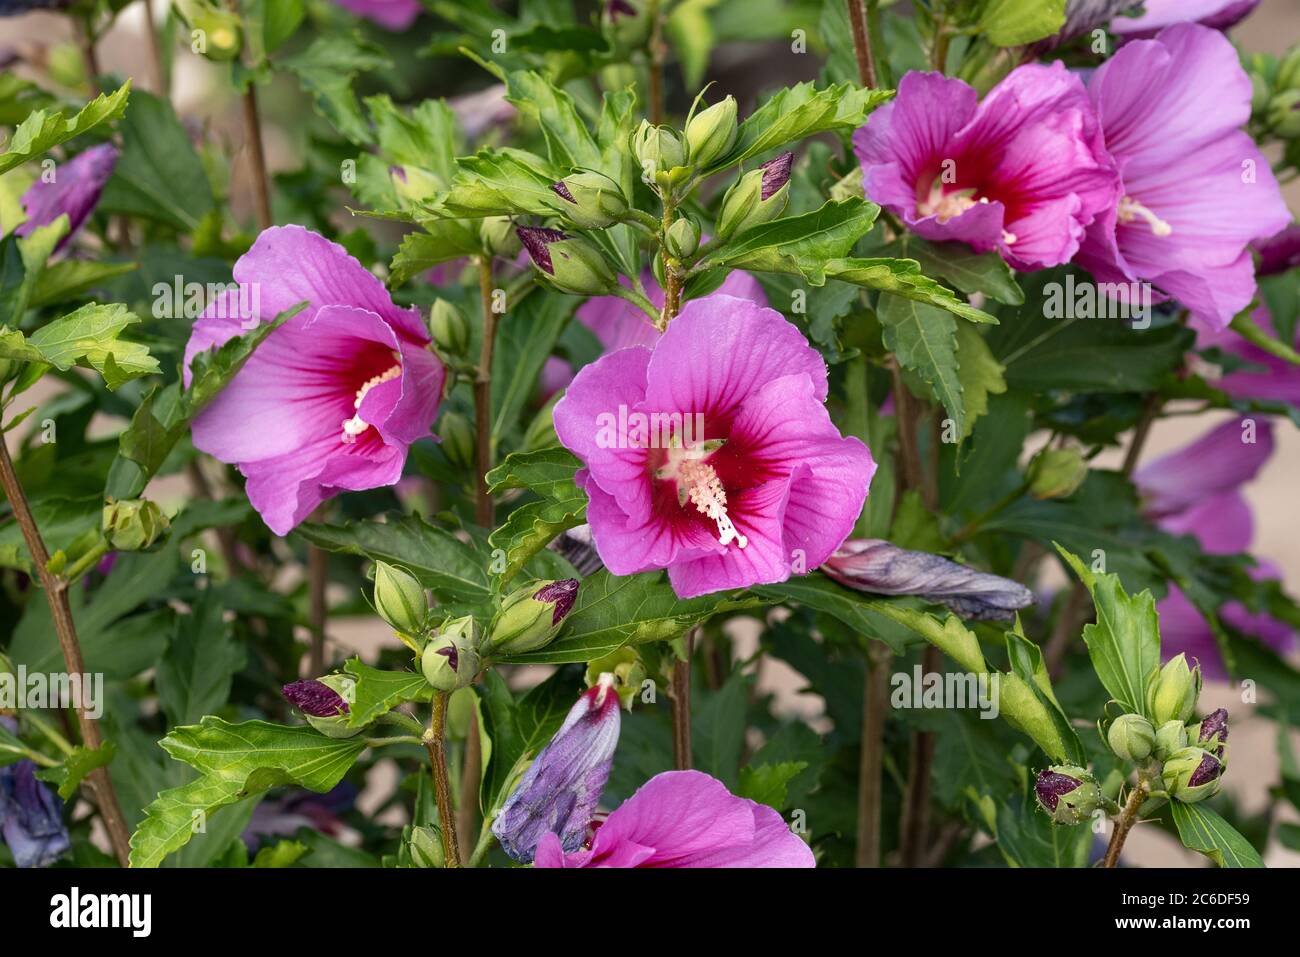 Garten-Eibisch, Ibiscus syriacus Silke, Hibiscus, Ibiscus syriacus Silke Foto Stock